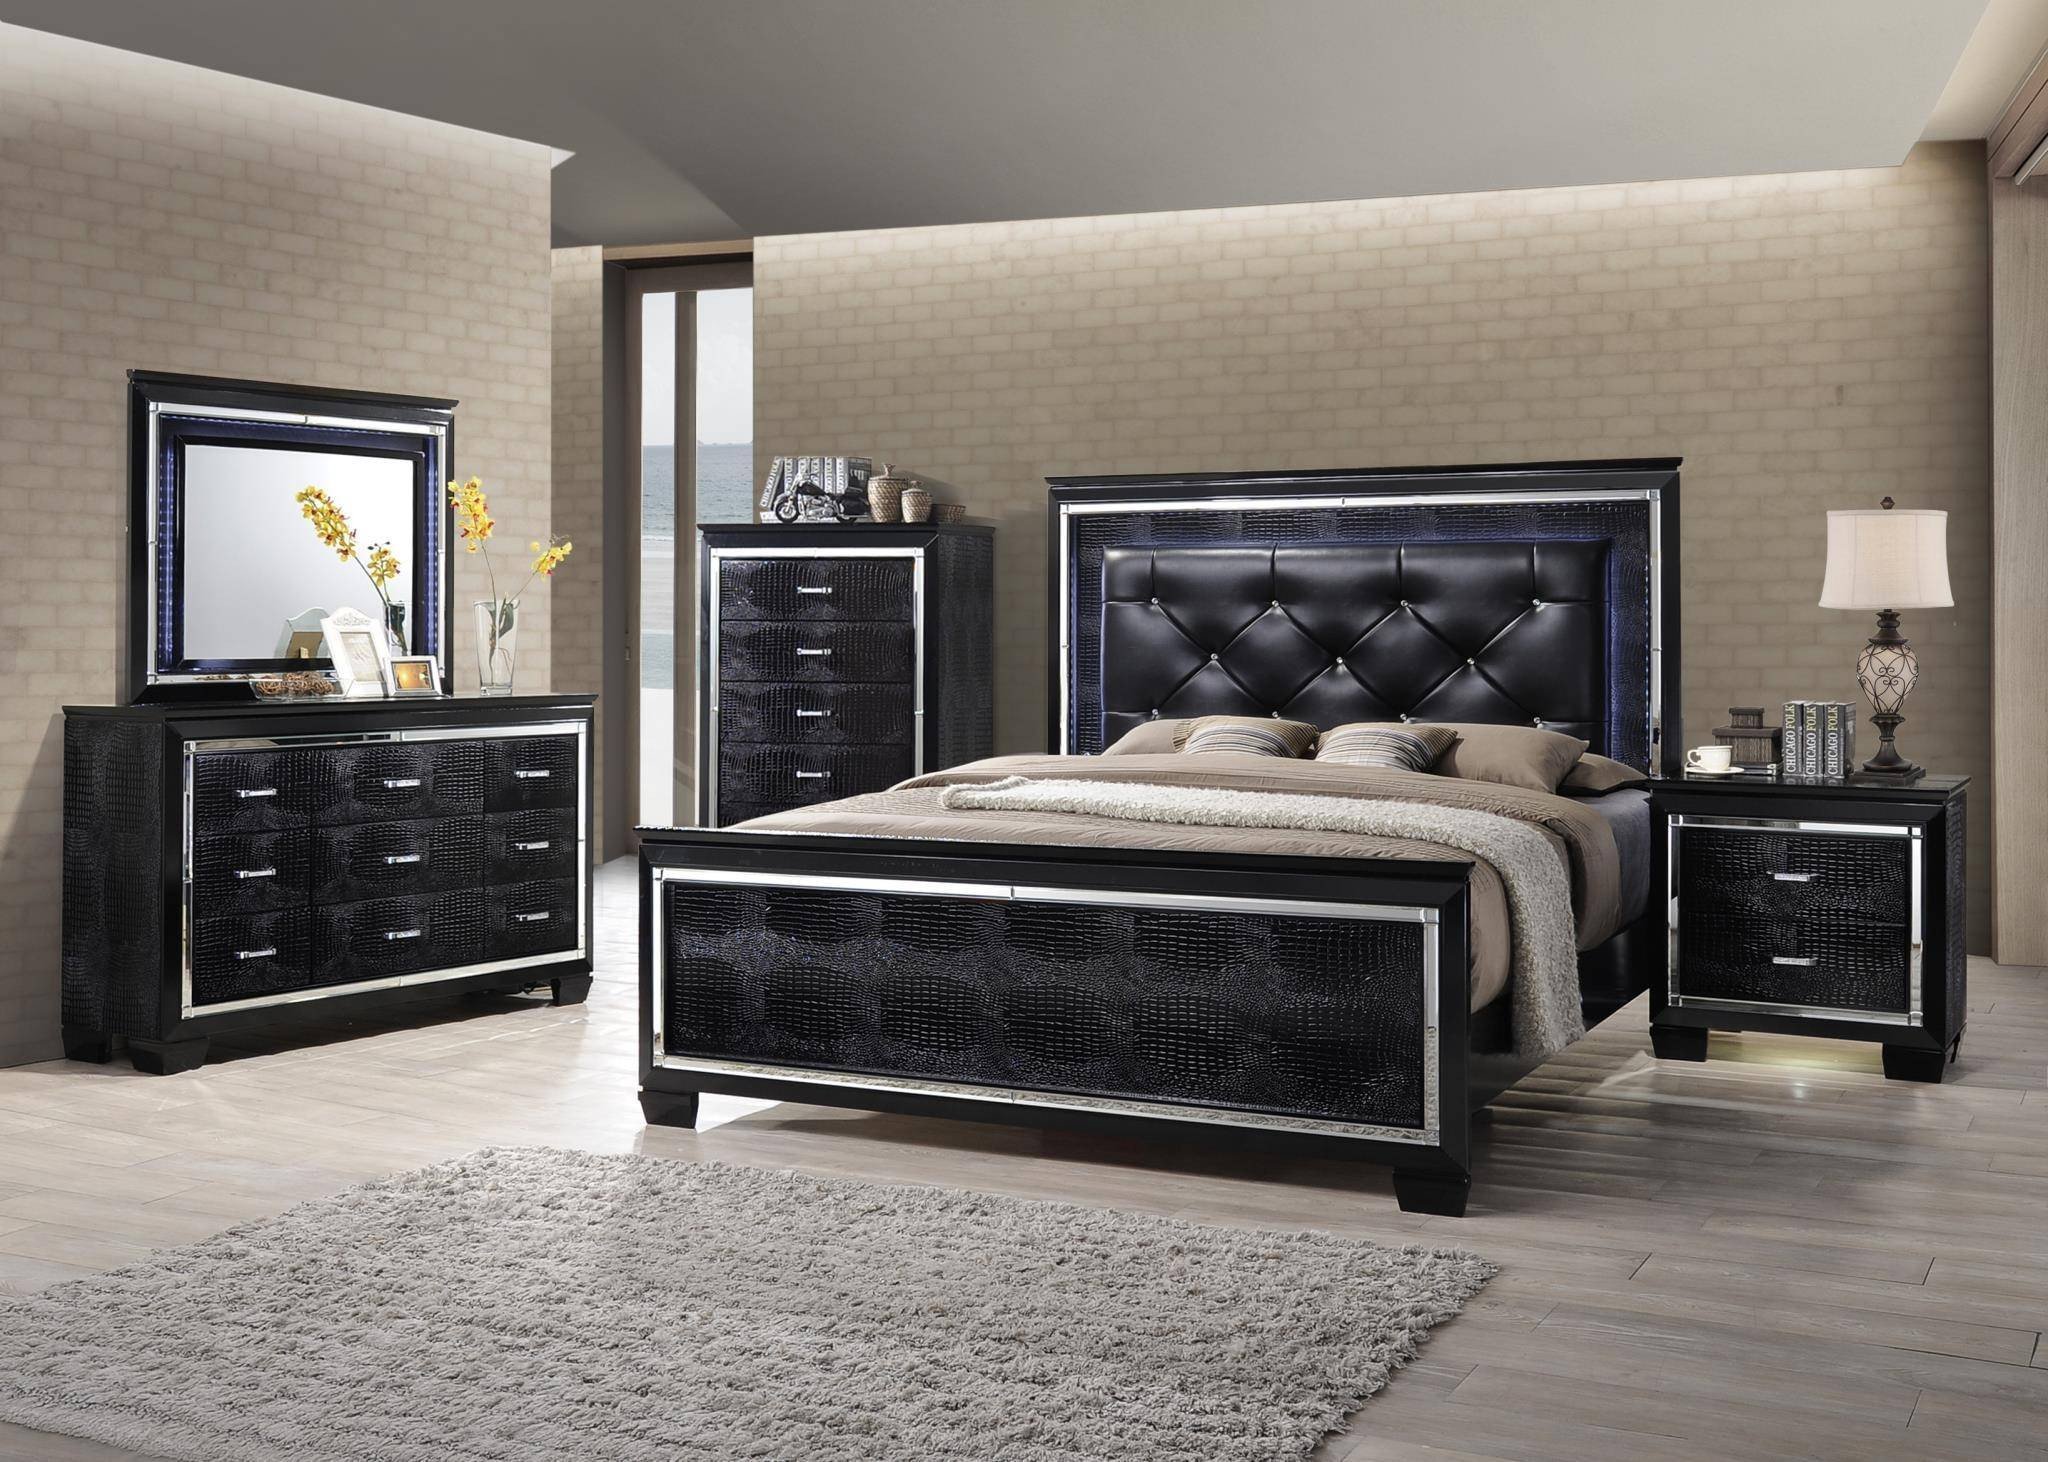 Leather Headboard Bedroom Set Luxury Myco Furniture Ma705 K Martina Black Diamond Tufted King